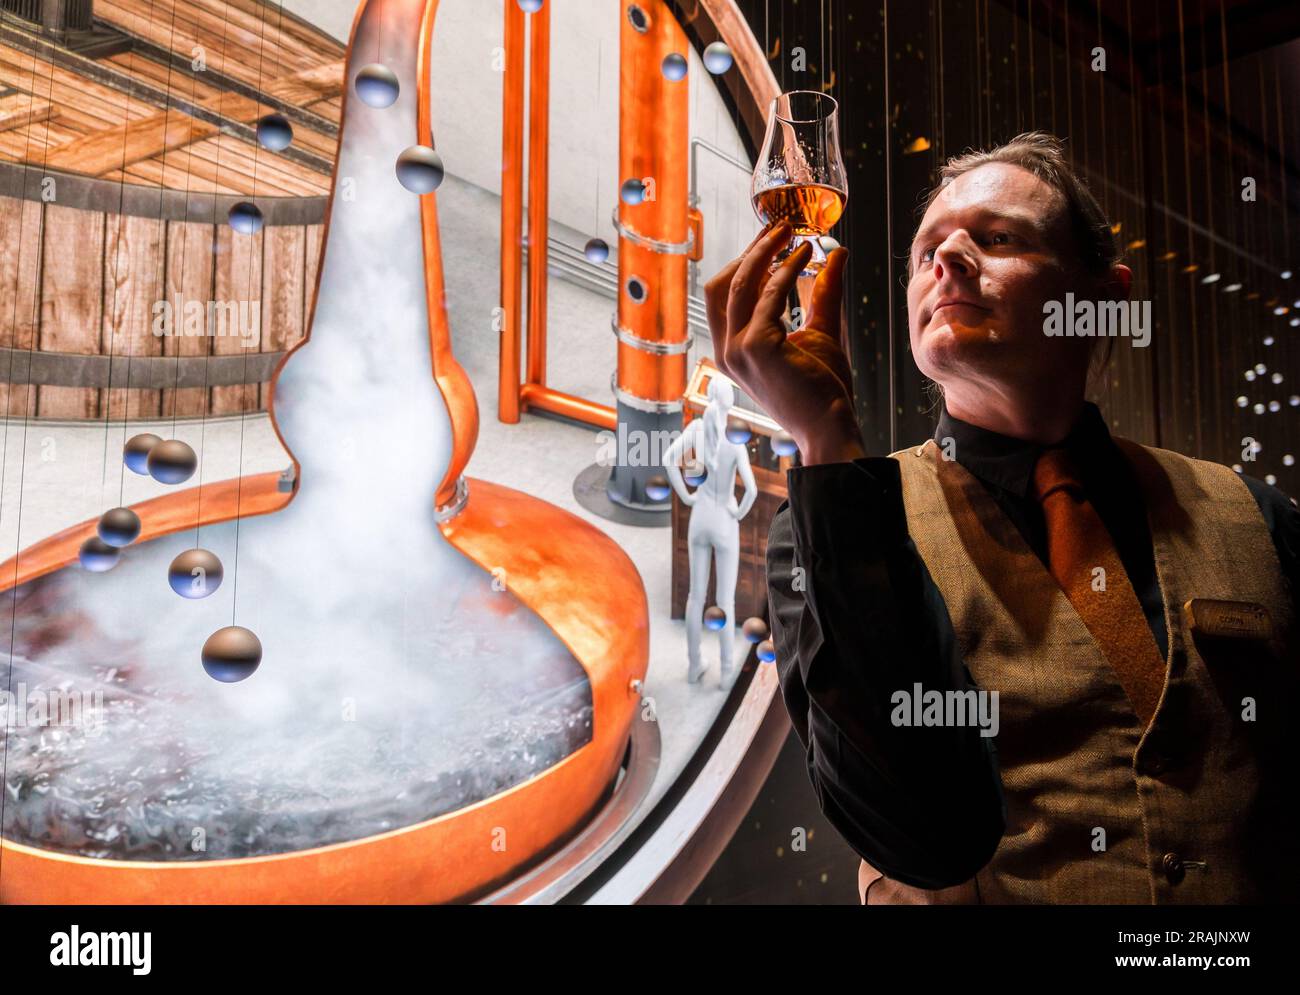 Reiseleiter mit einem Glas Whisky bei einer beeindruckenden Medienprojektion über Whisky-Brauen, Scotch Whisky Experience, Edinburgh, Schottland, Großbritannien Stockfoto